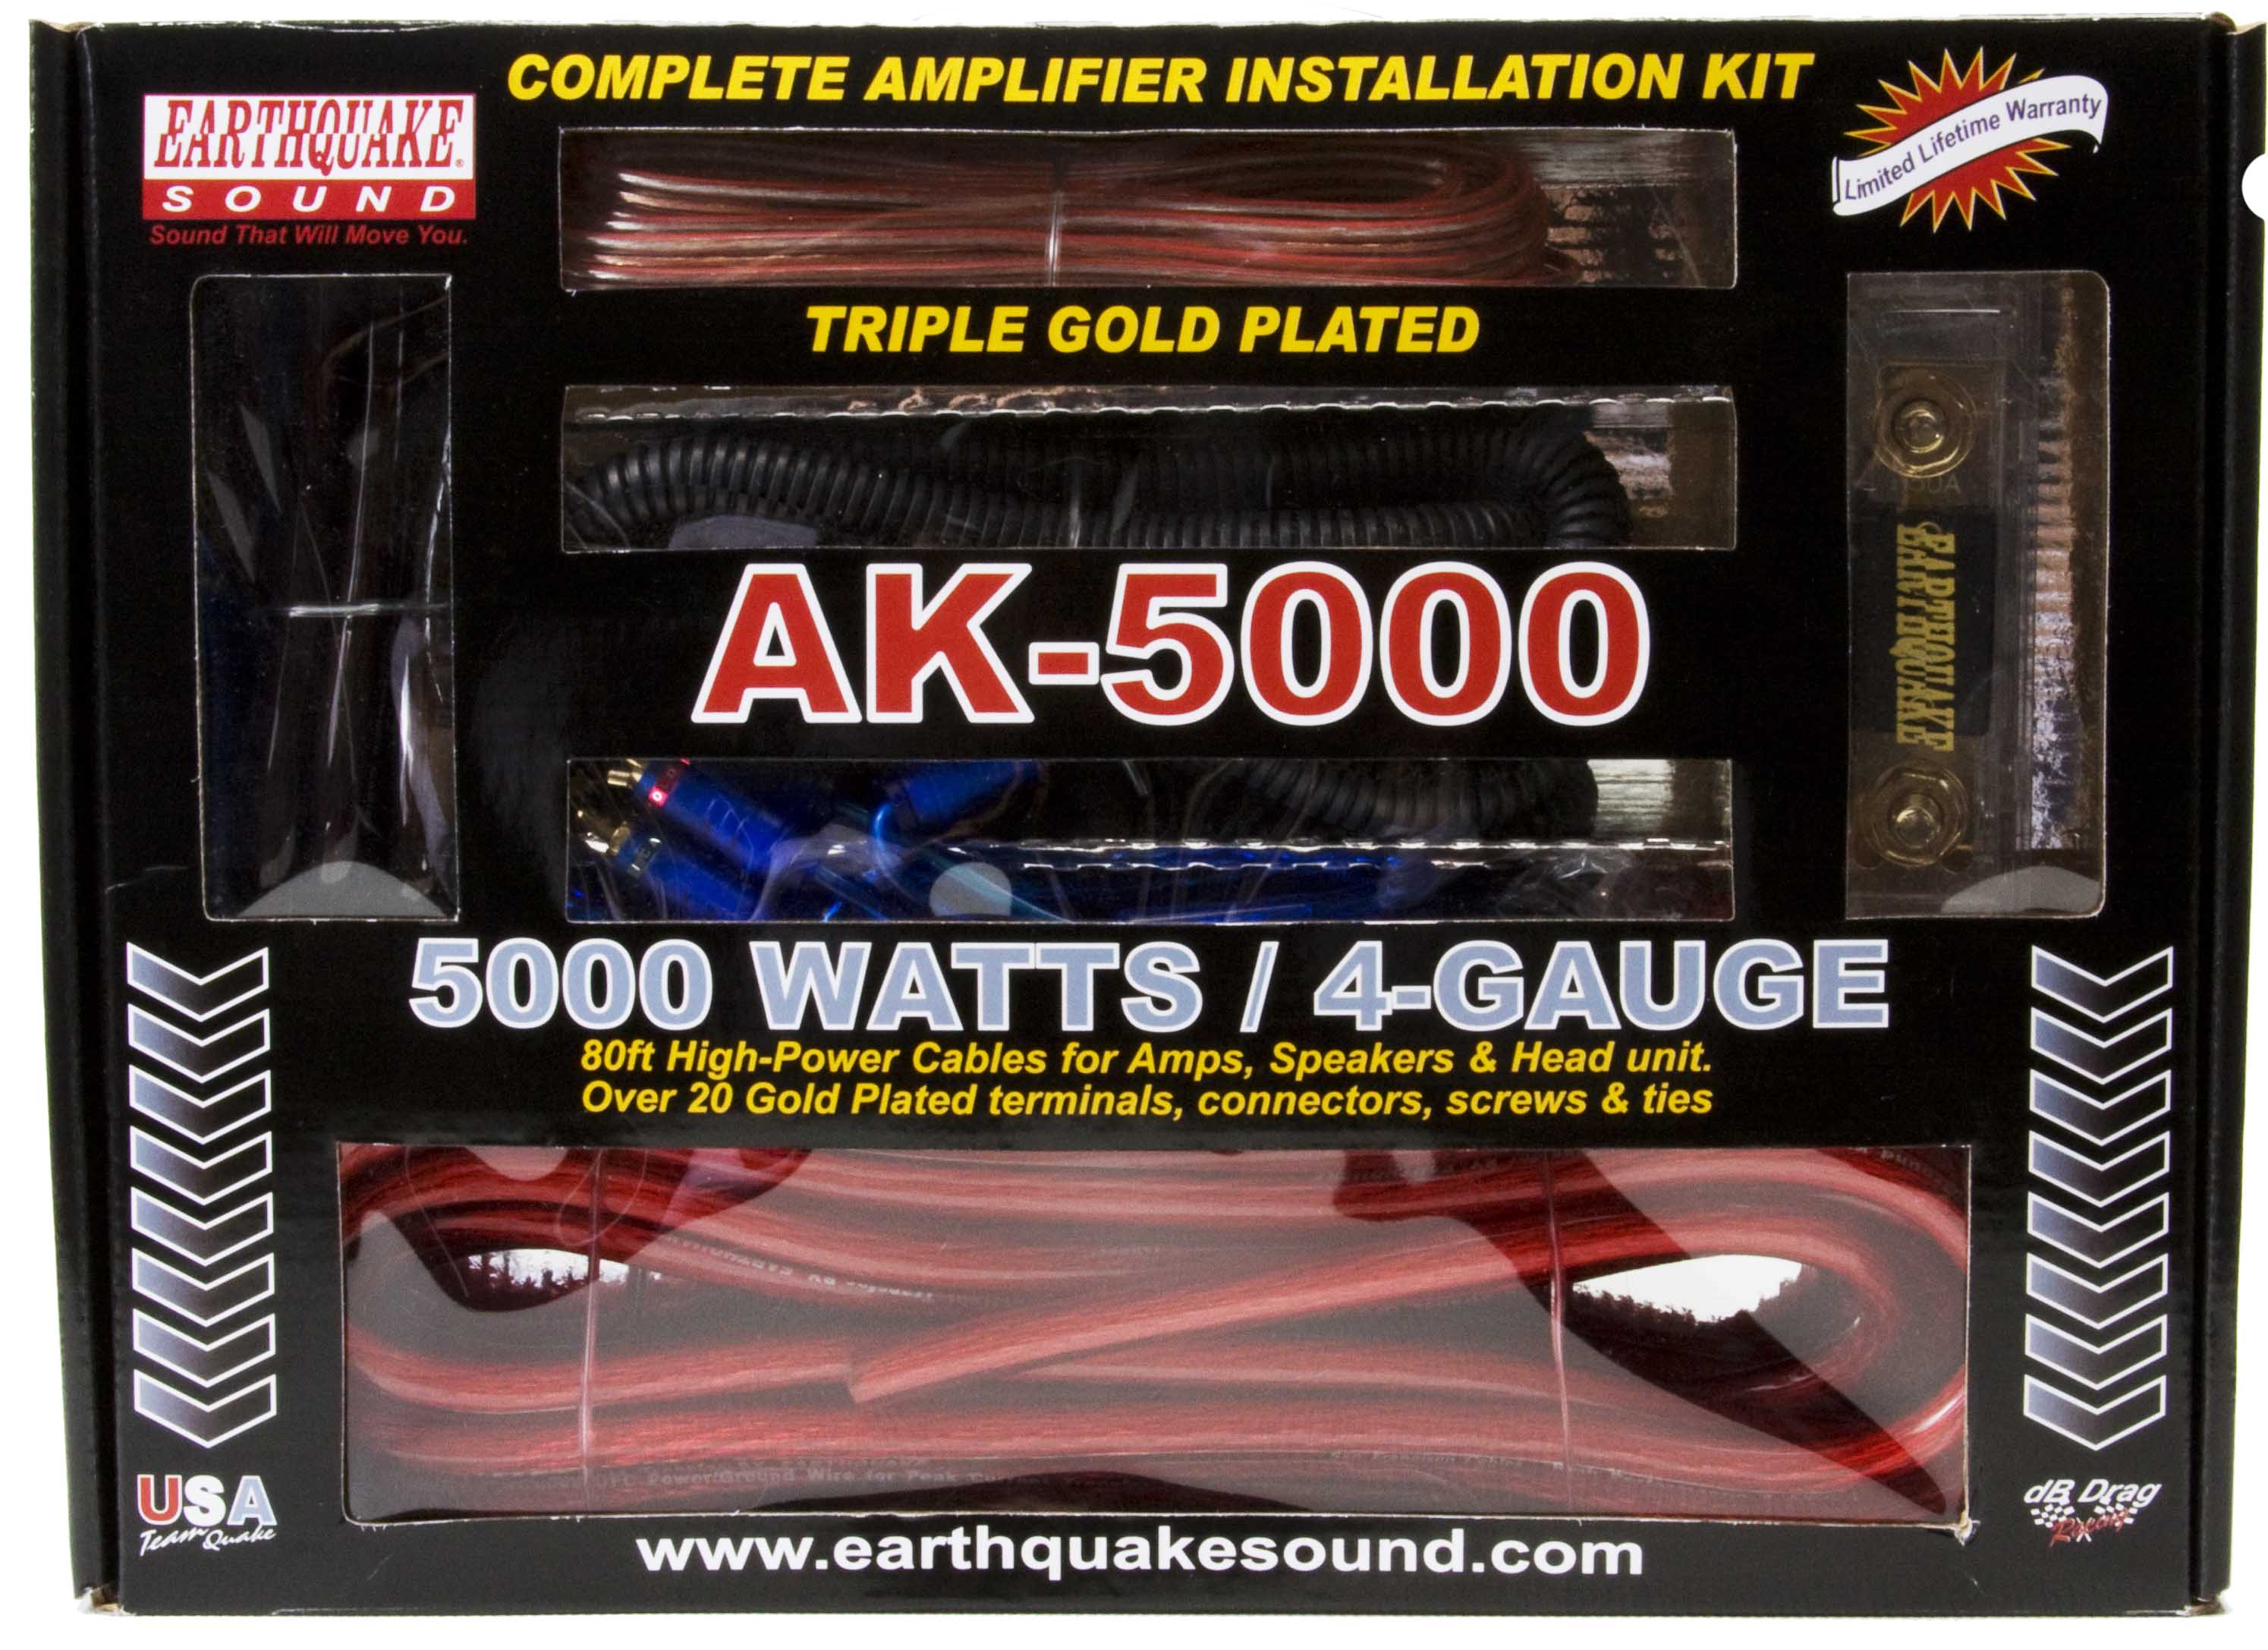 jAK-5000 Installation Kit